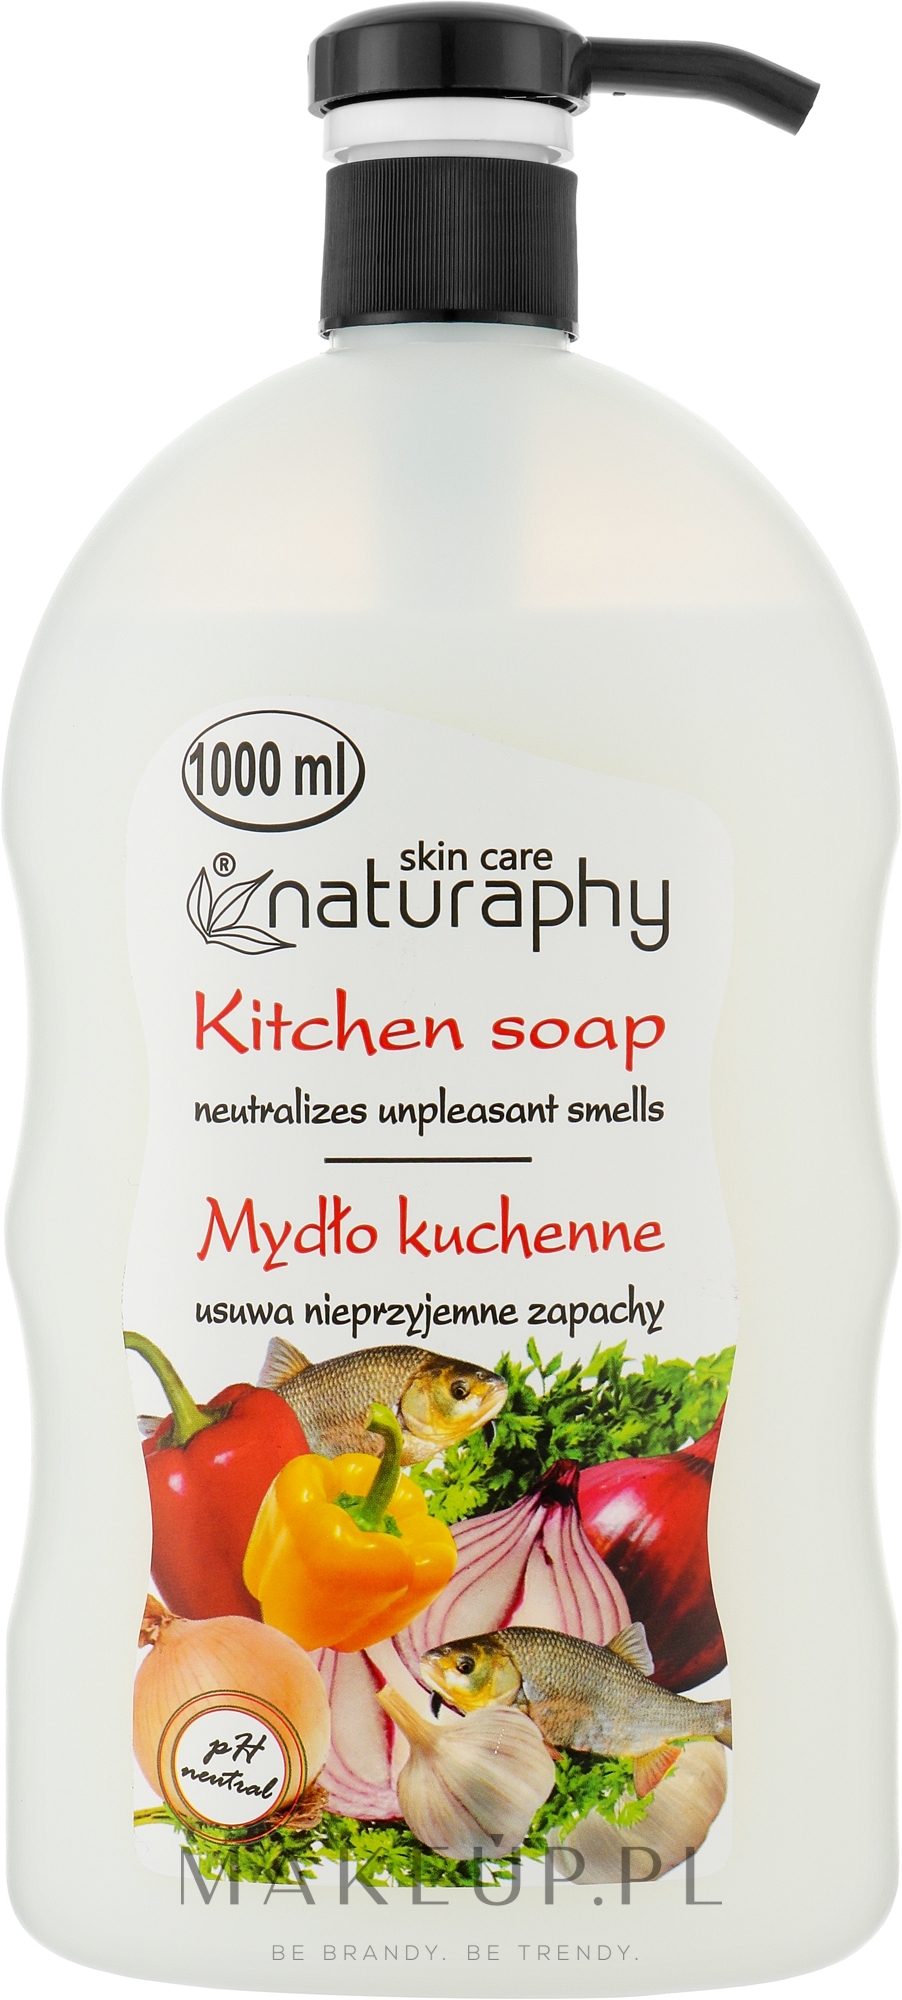 Kuchenne mydło w płynie do rąk usuwające nieprzyjemne zapachy - Naturaphy Hand Soap — Zdjęcie 1000 ml